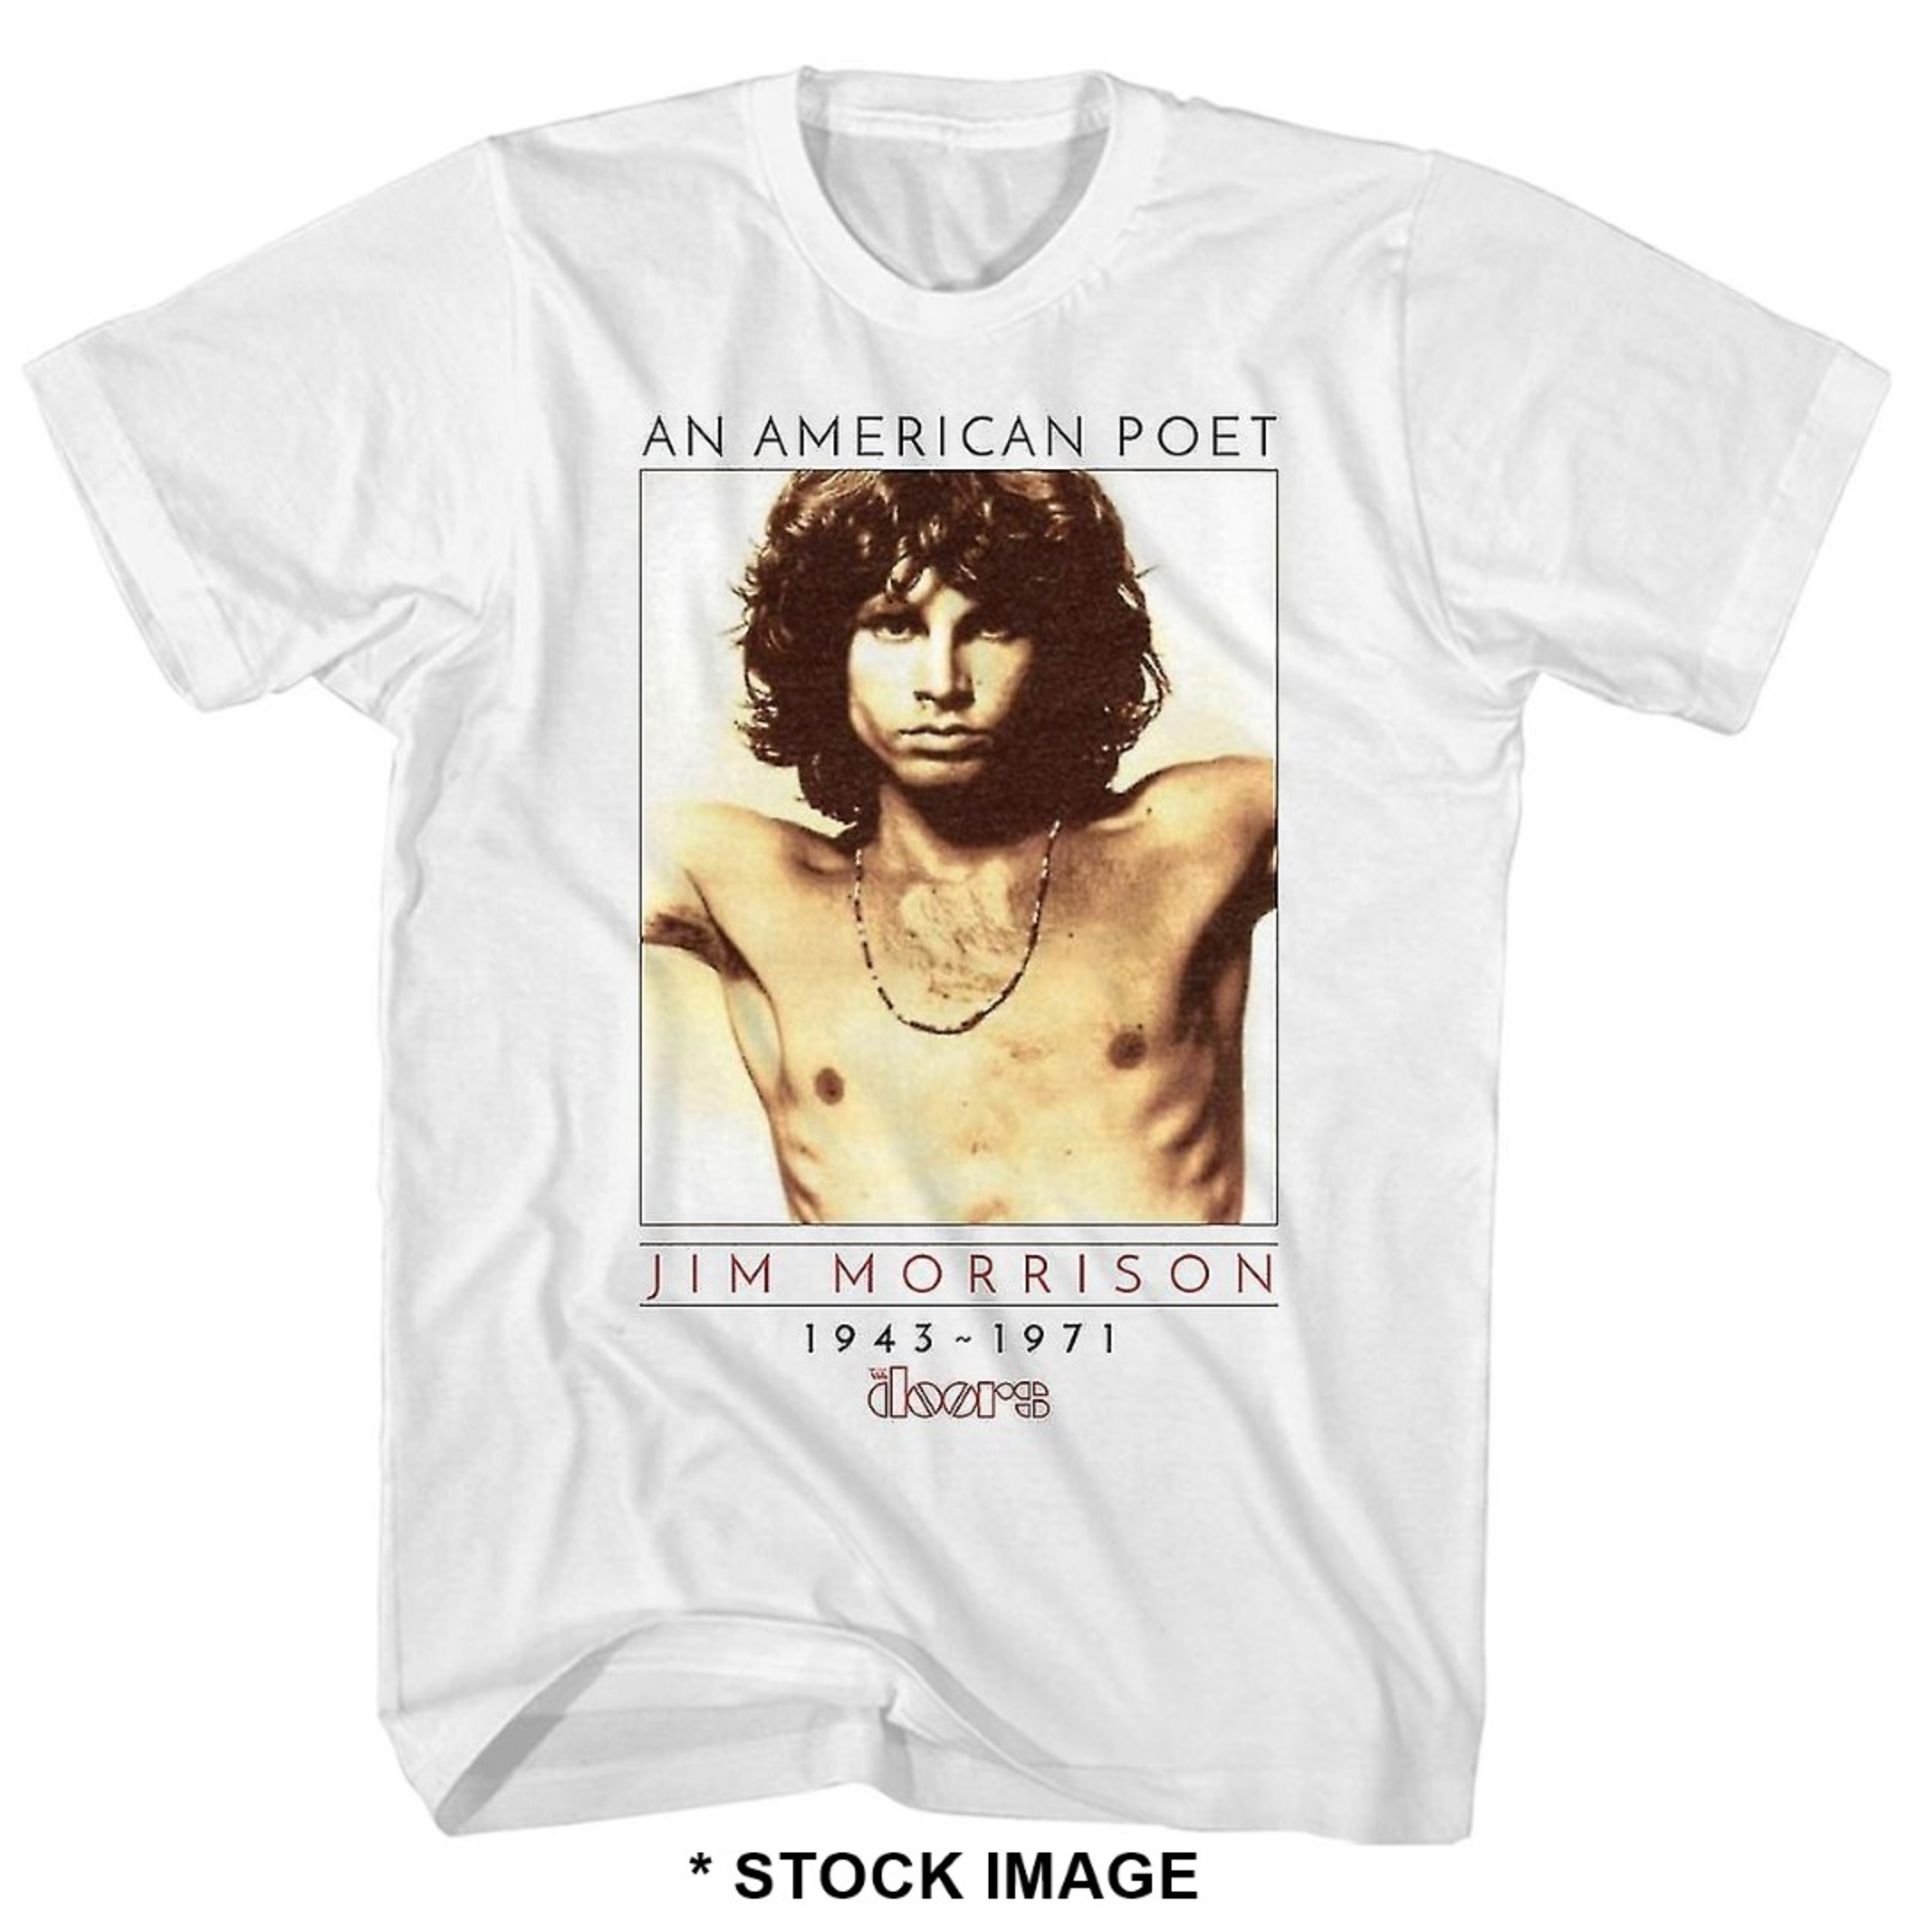 1 x THE DOORS Official Merchandise An American Poet Jim Morrison Logo T-Shirt - Size: XXL - Colour: